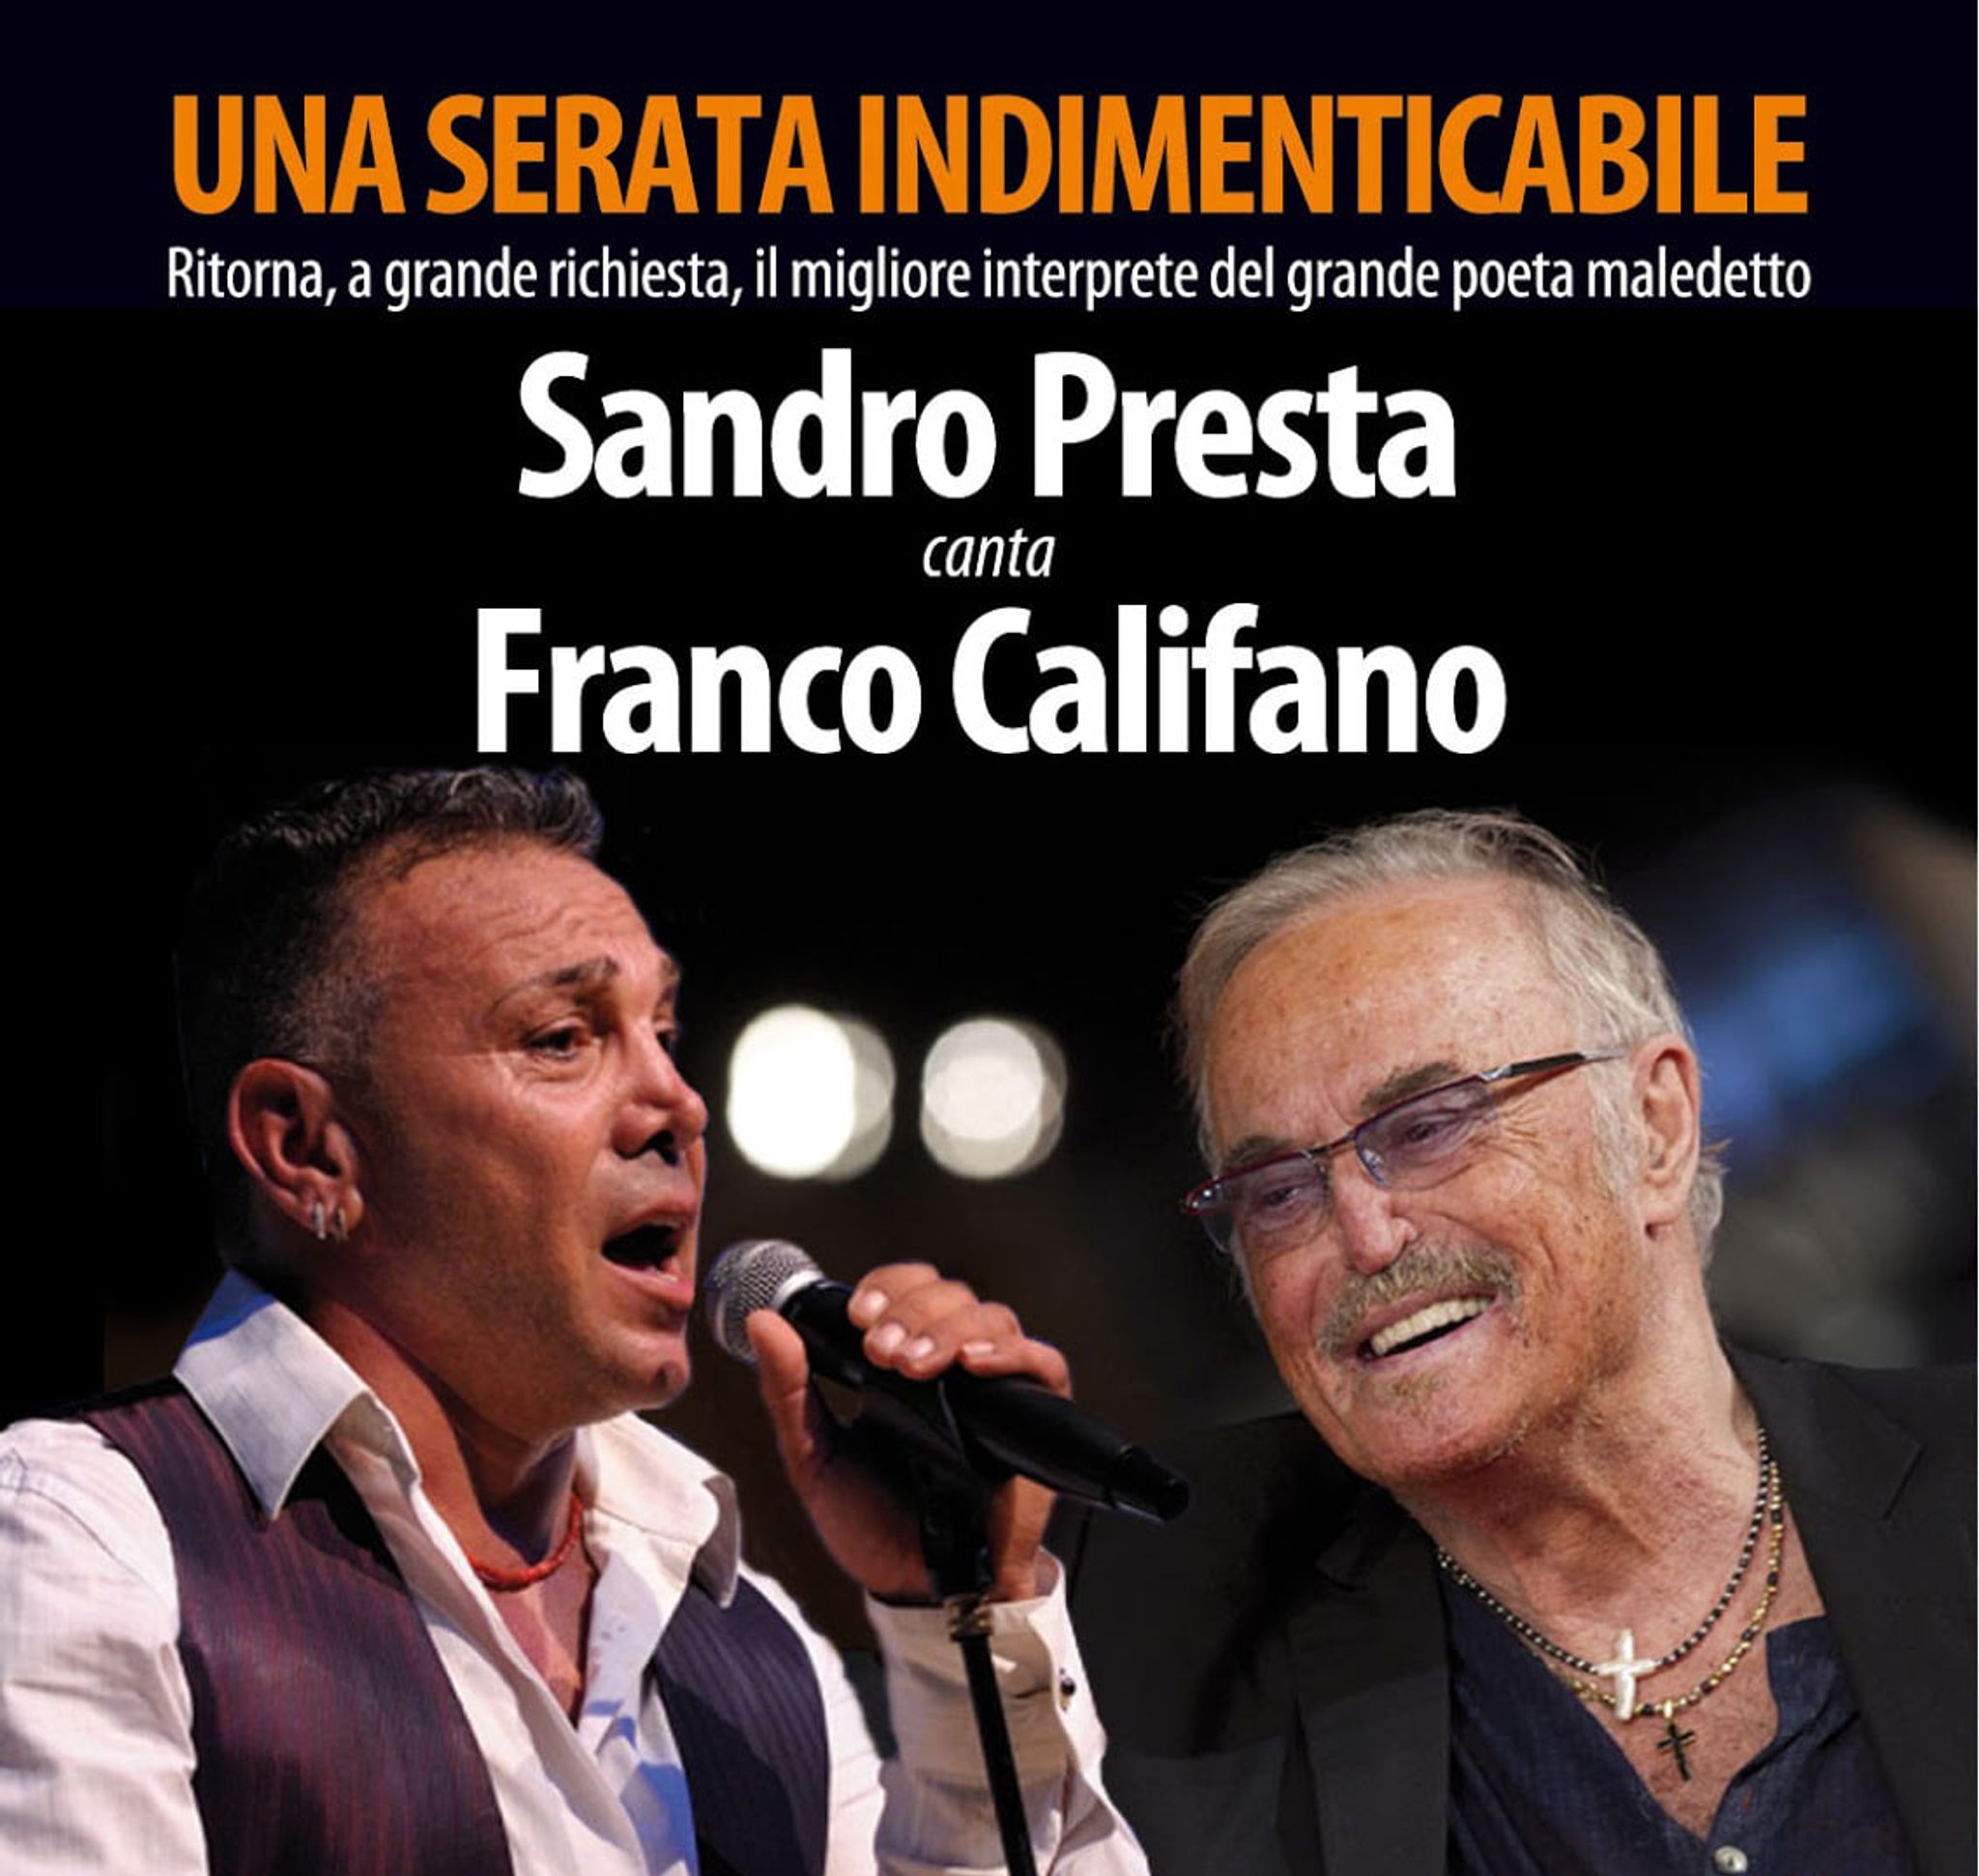 Serata omaggio a Franco Califano con Sandro Presta